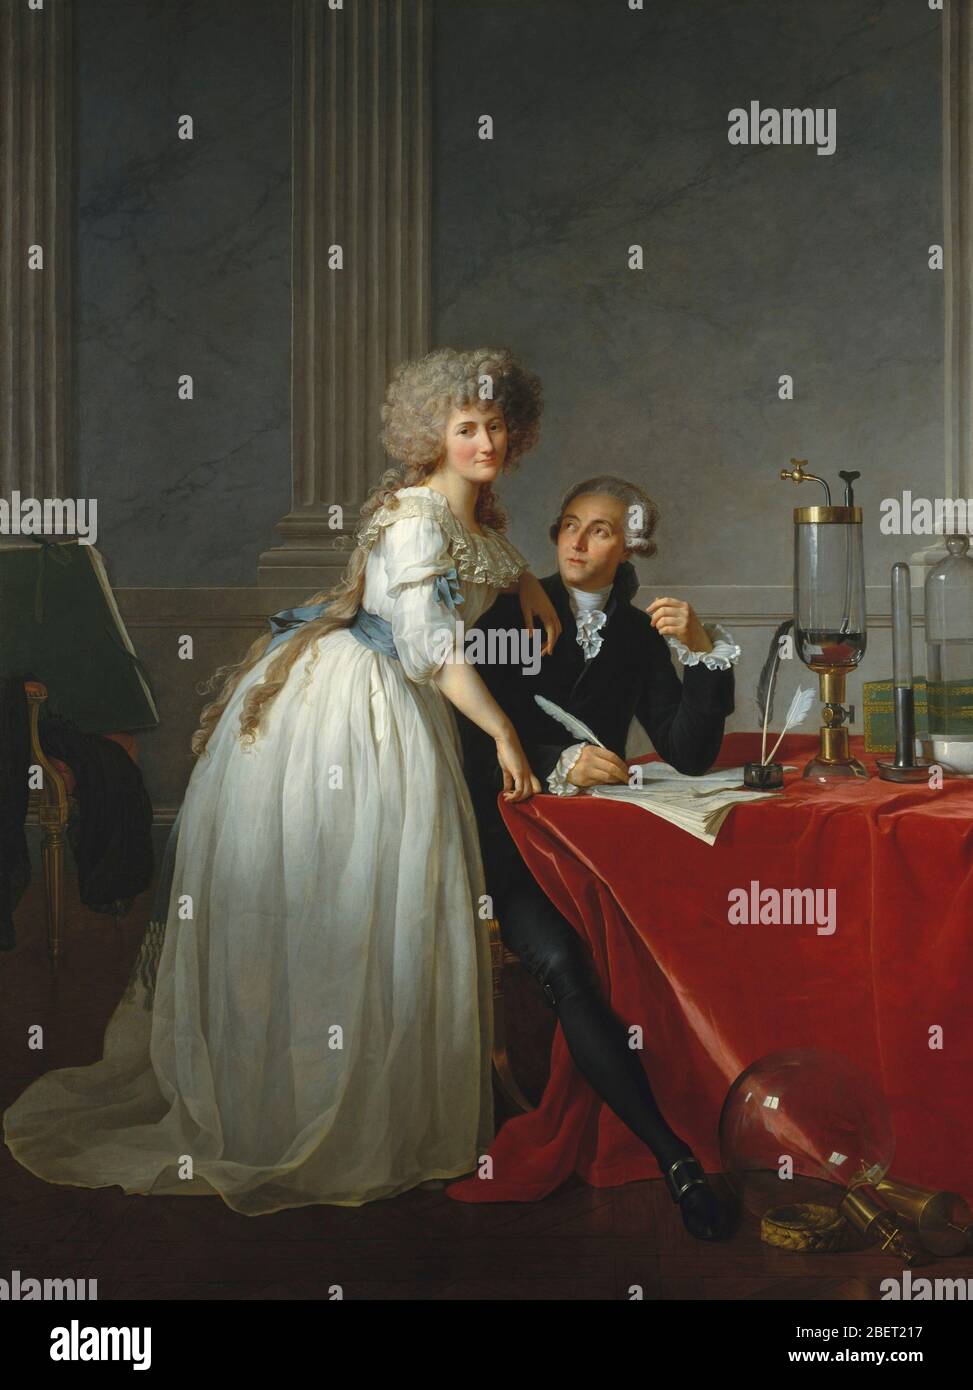 Pittura europea a olio del XVIII secolo di Antoine-Laurent de Lavoisier e sua moglie, entrambi noti chimici dell'epoca. Foto Stock